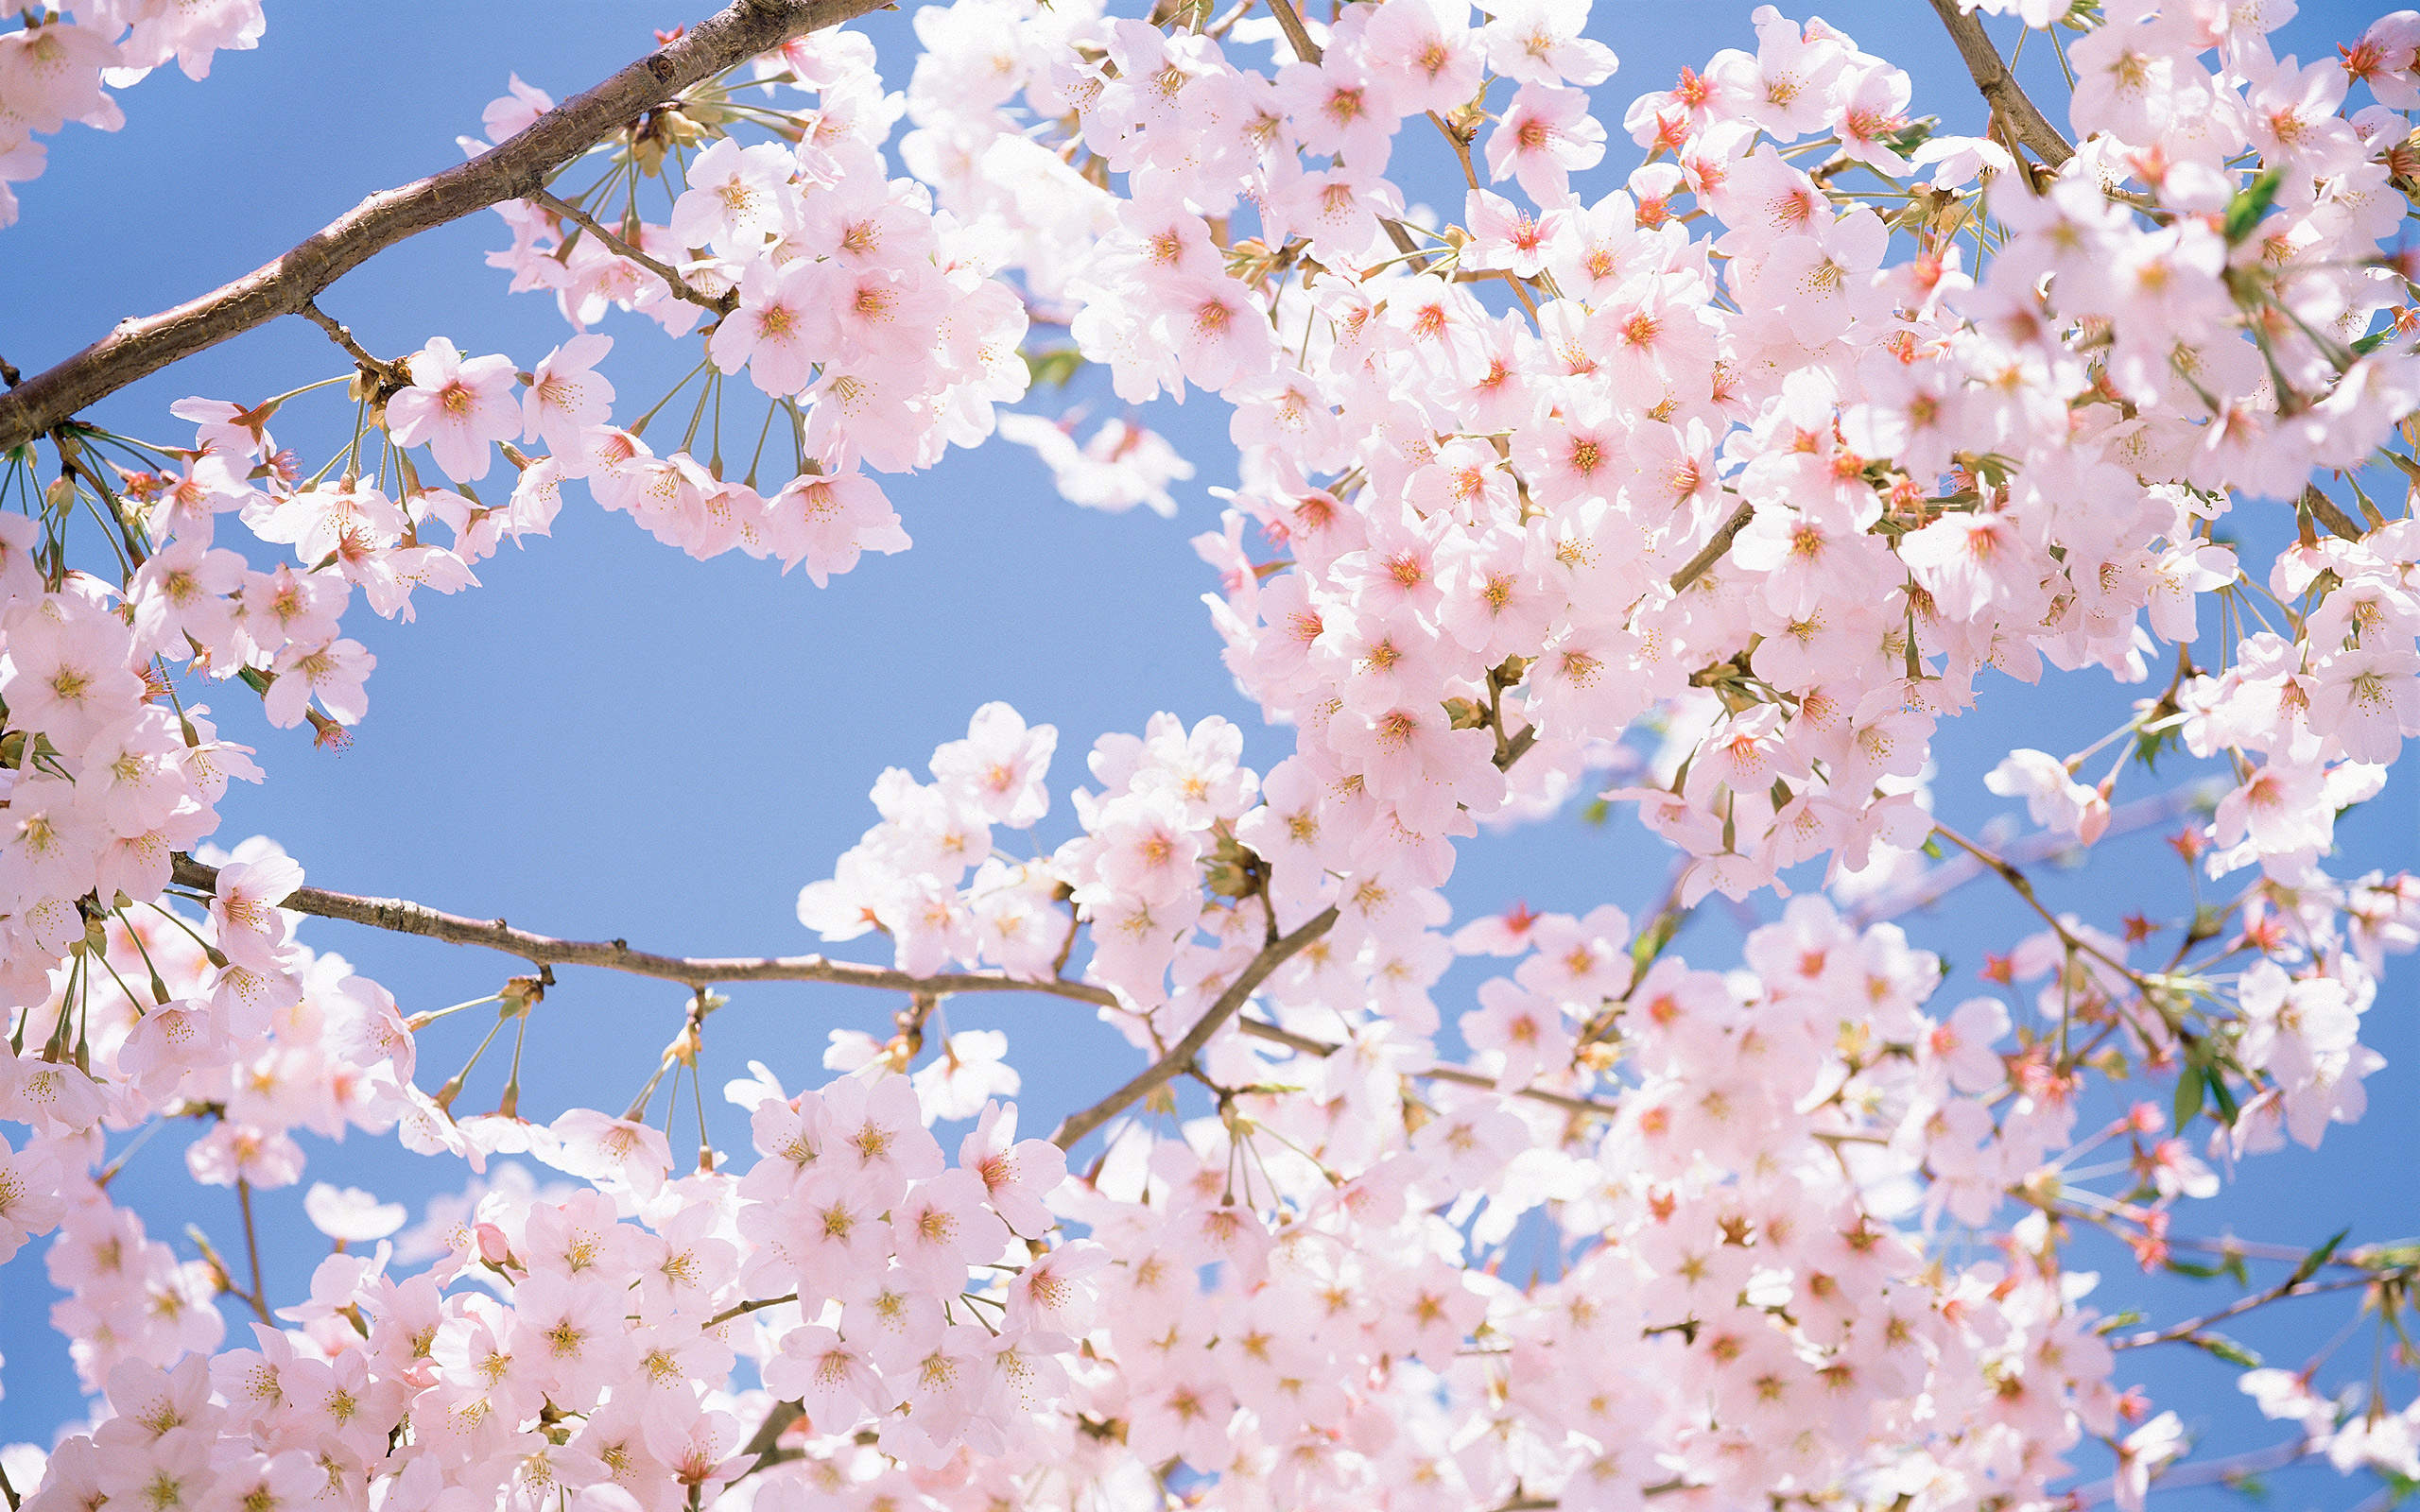 Bài hát về mùa hoa anh đào Nhật Bản